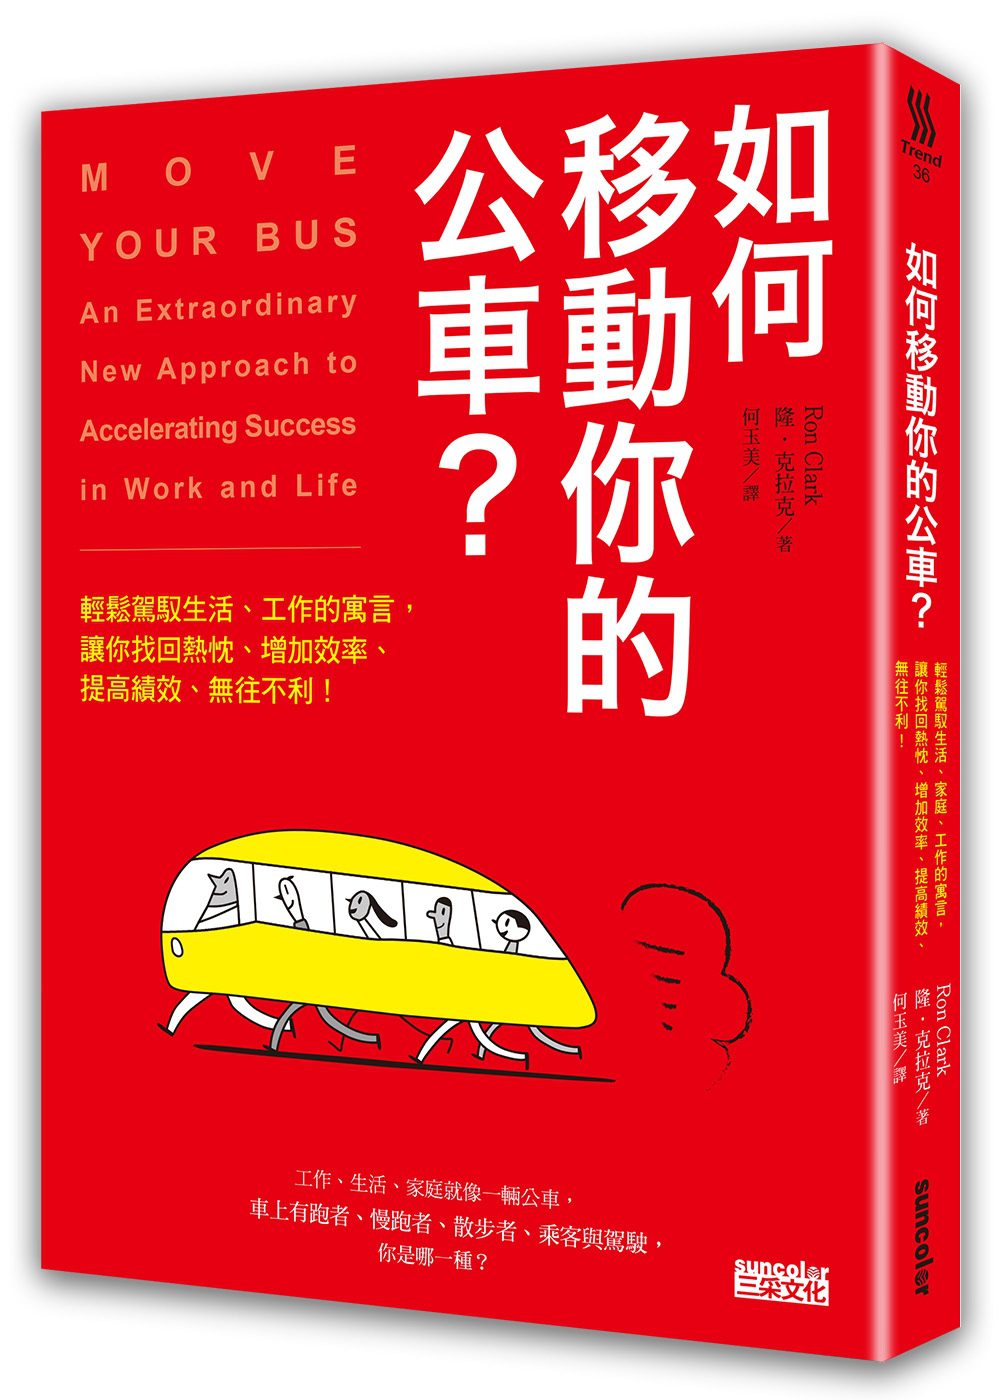 如何移動你的公車？：輕鬆駕馭生活、工作的寓言，讓你找回熱忱、增加效率、提高績效、無往不利！